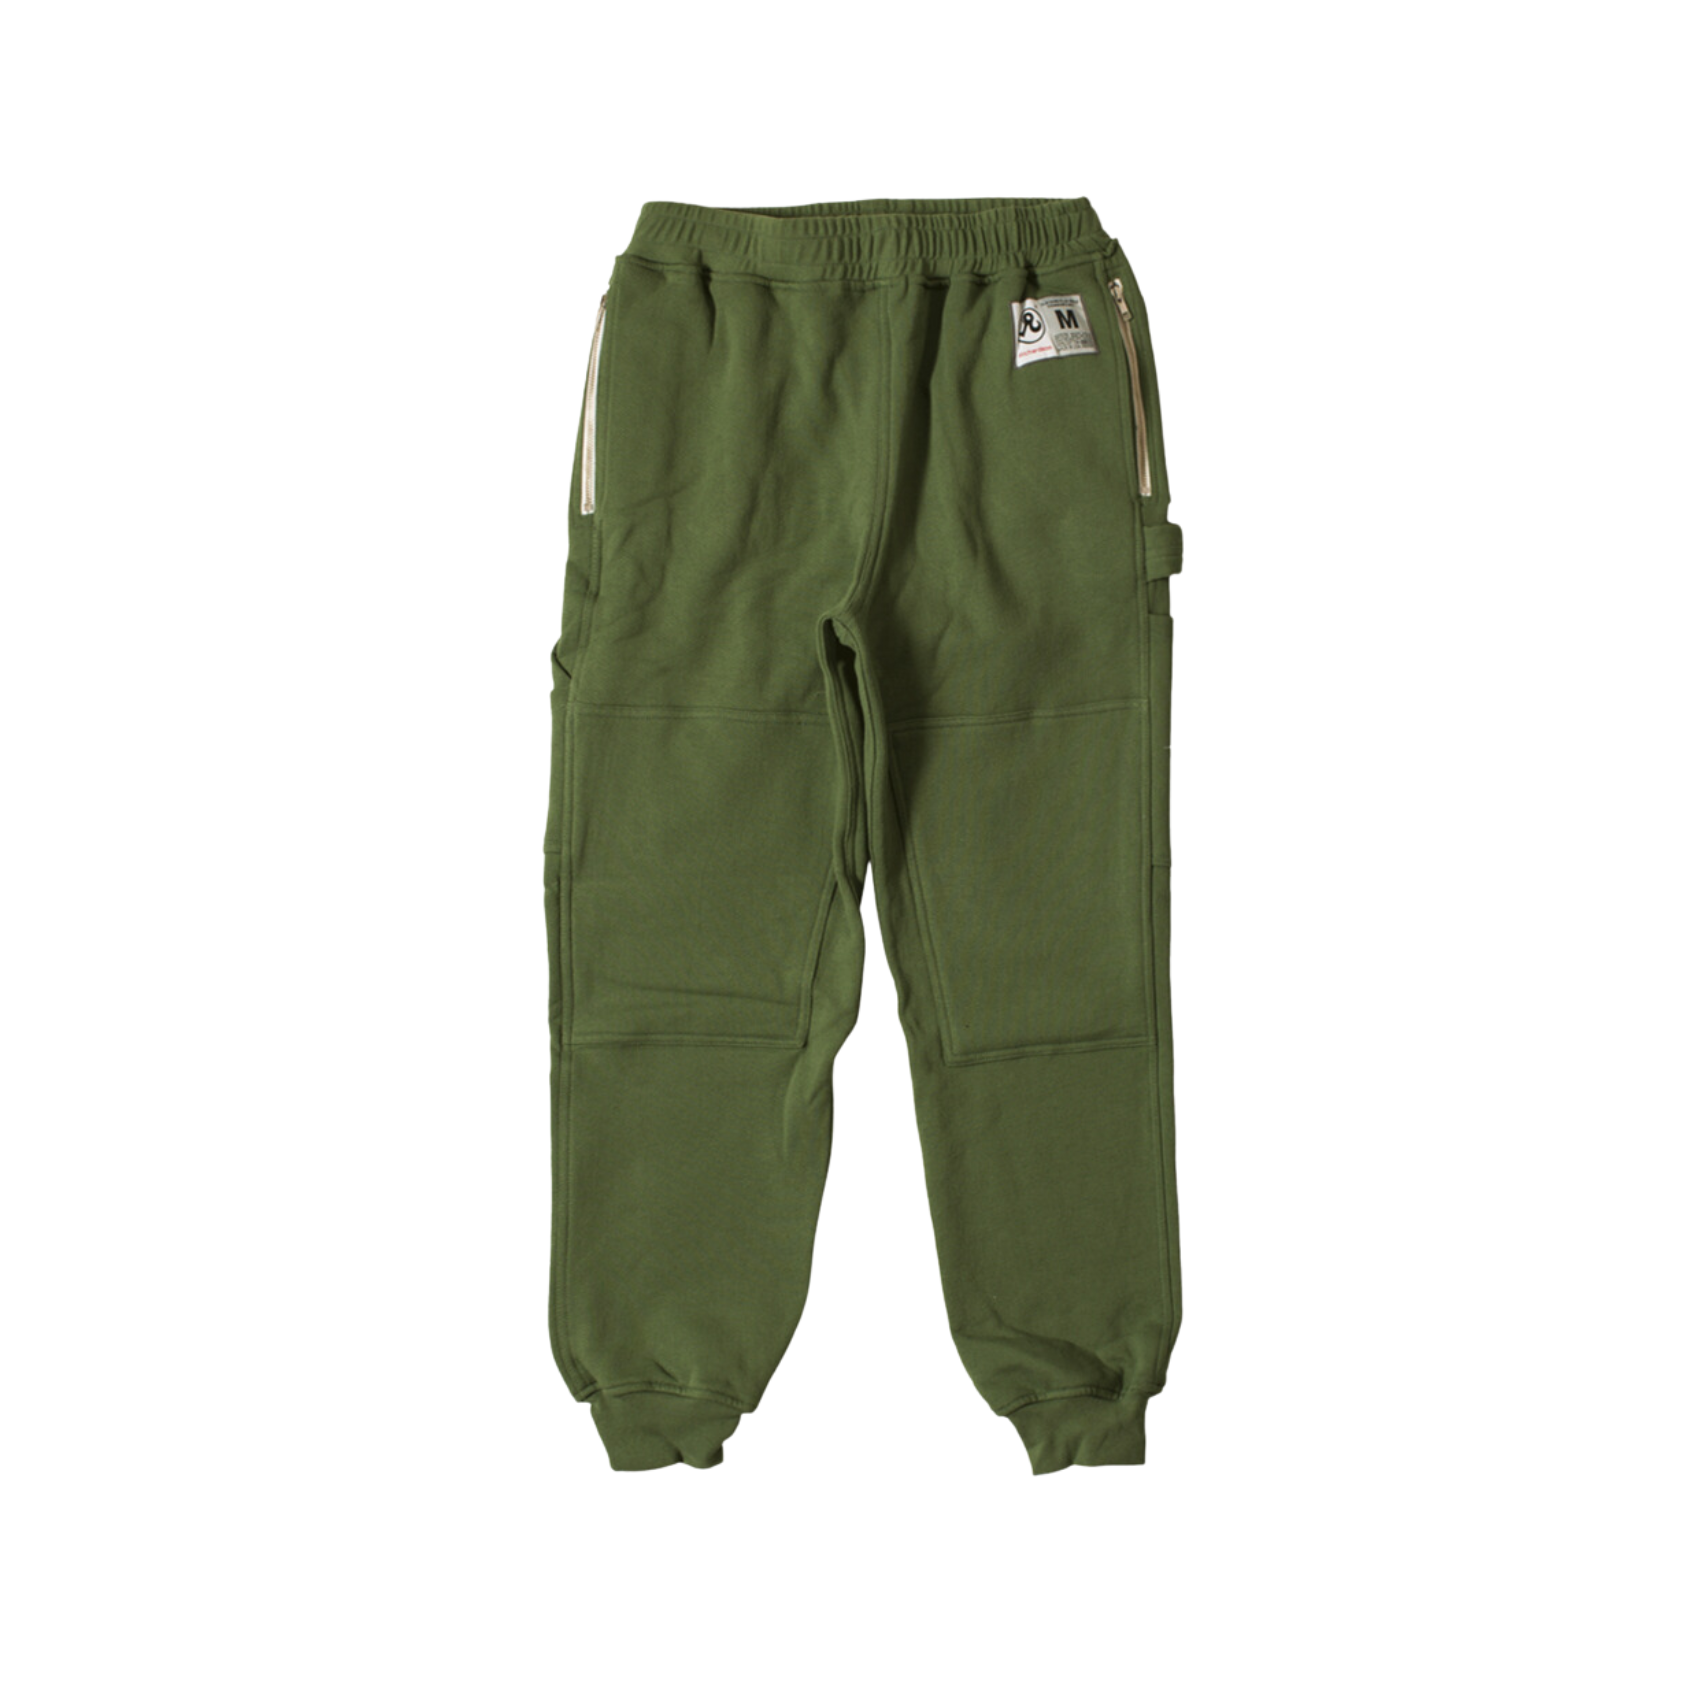 Engineered Fleece Pants - Green